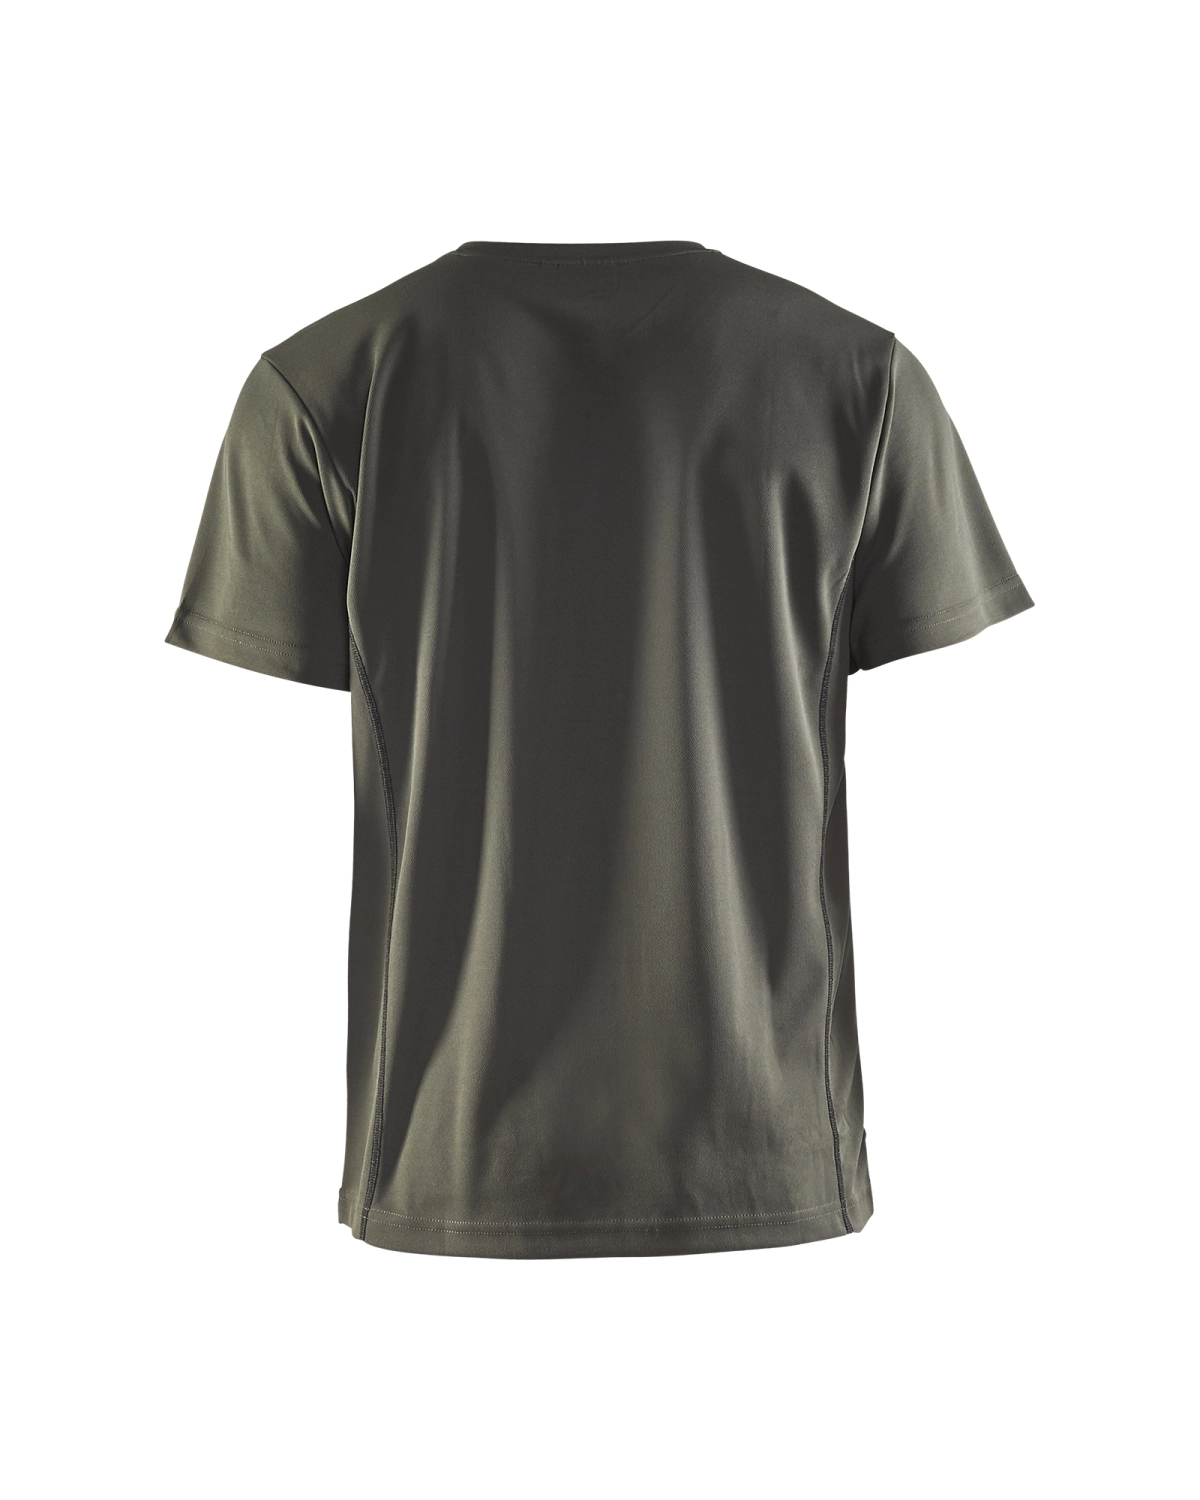 Blåkläder 3323 UV t-shirt - army groen - XL